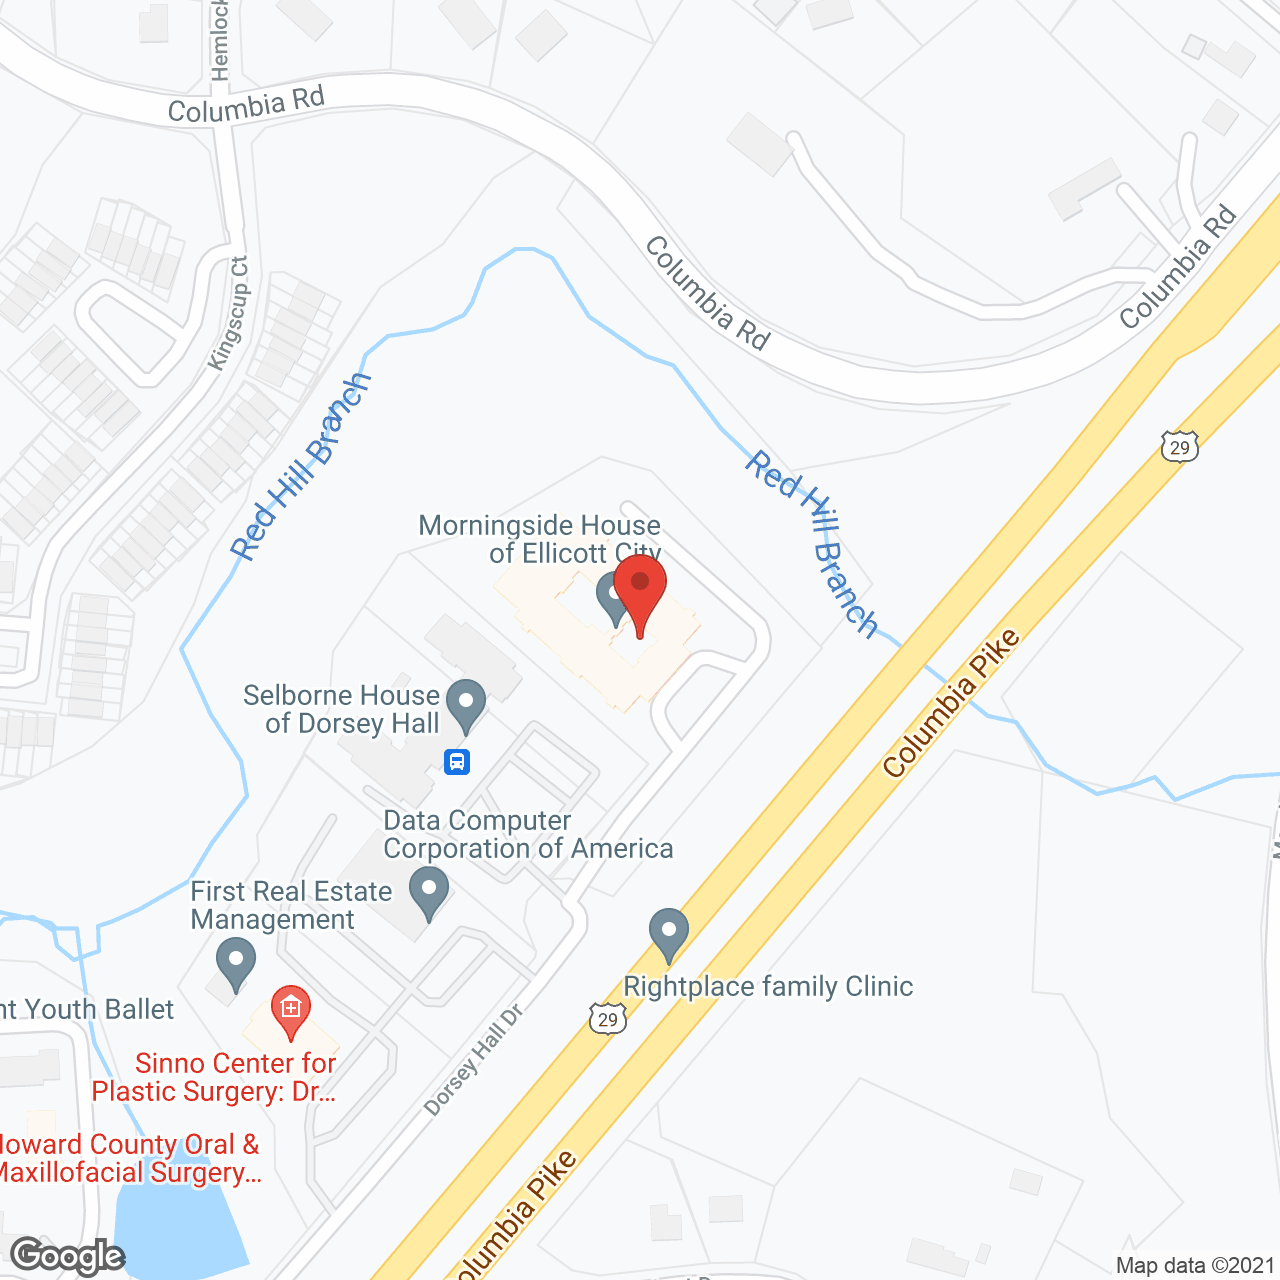 Morningside House of Ellicott City in google map